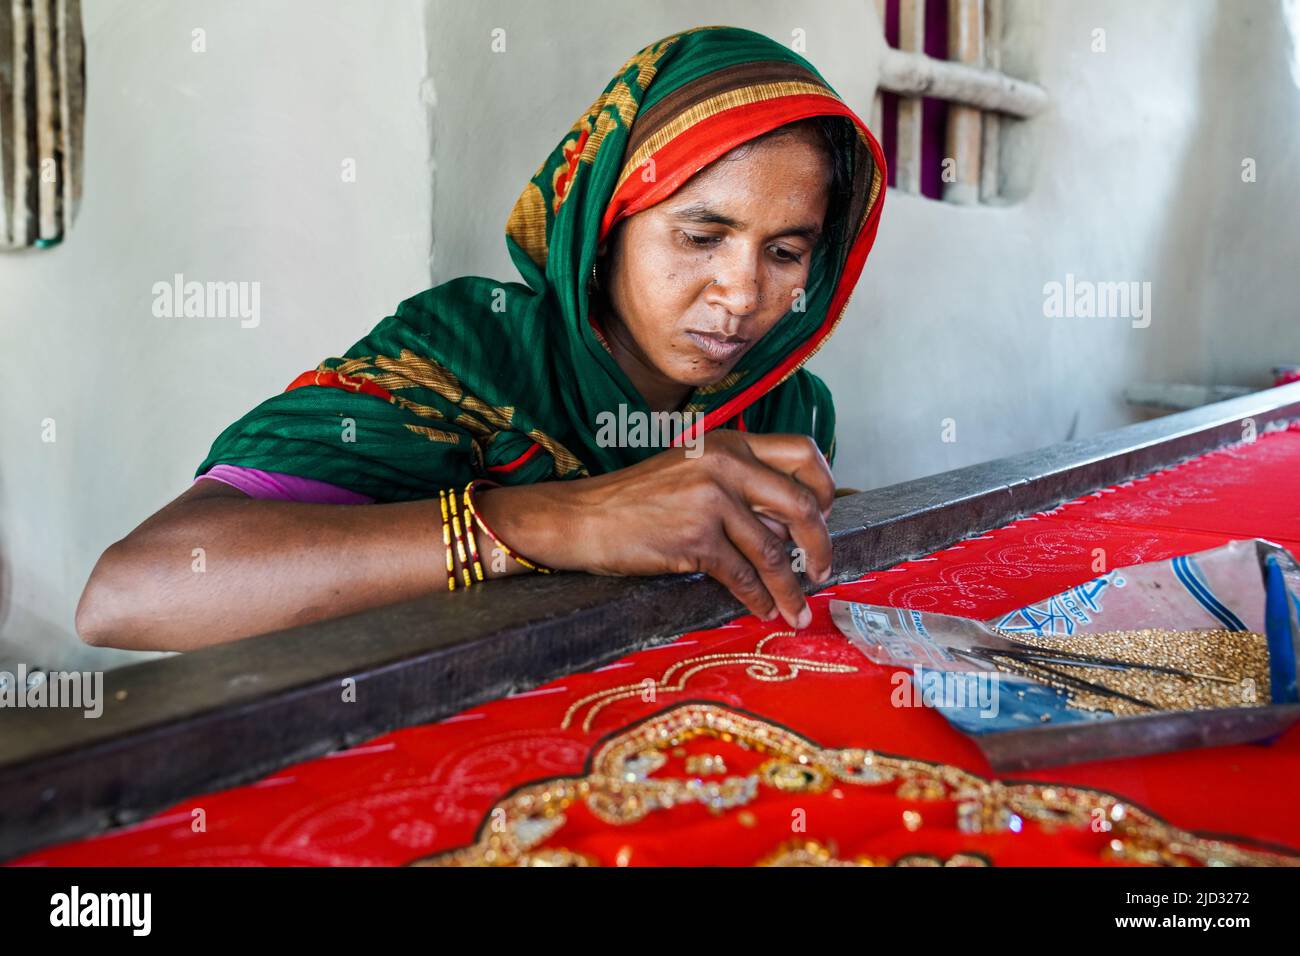 Embroidery work for a sari in the village of Baluijhake/Dhosa near Kolkata, India Stock Photo